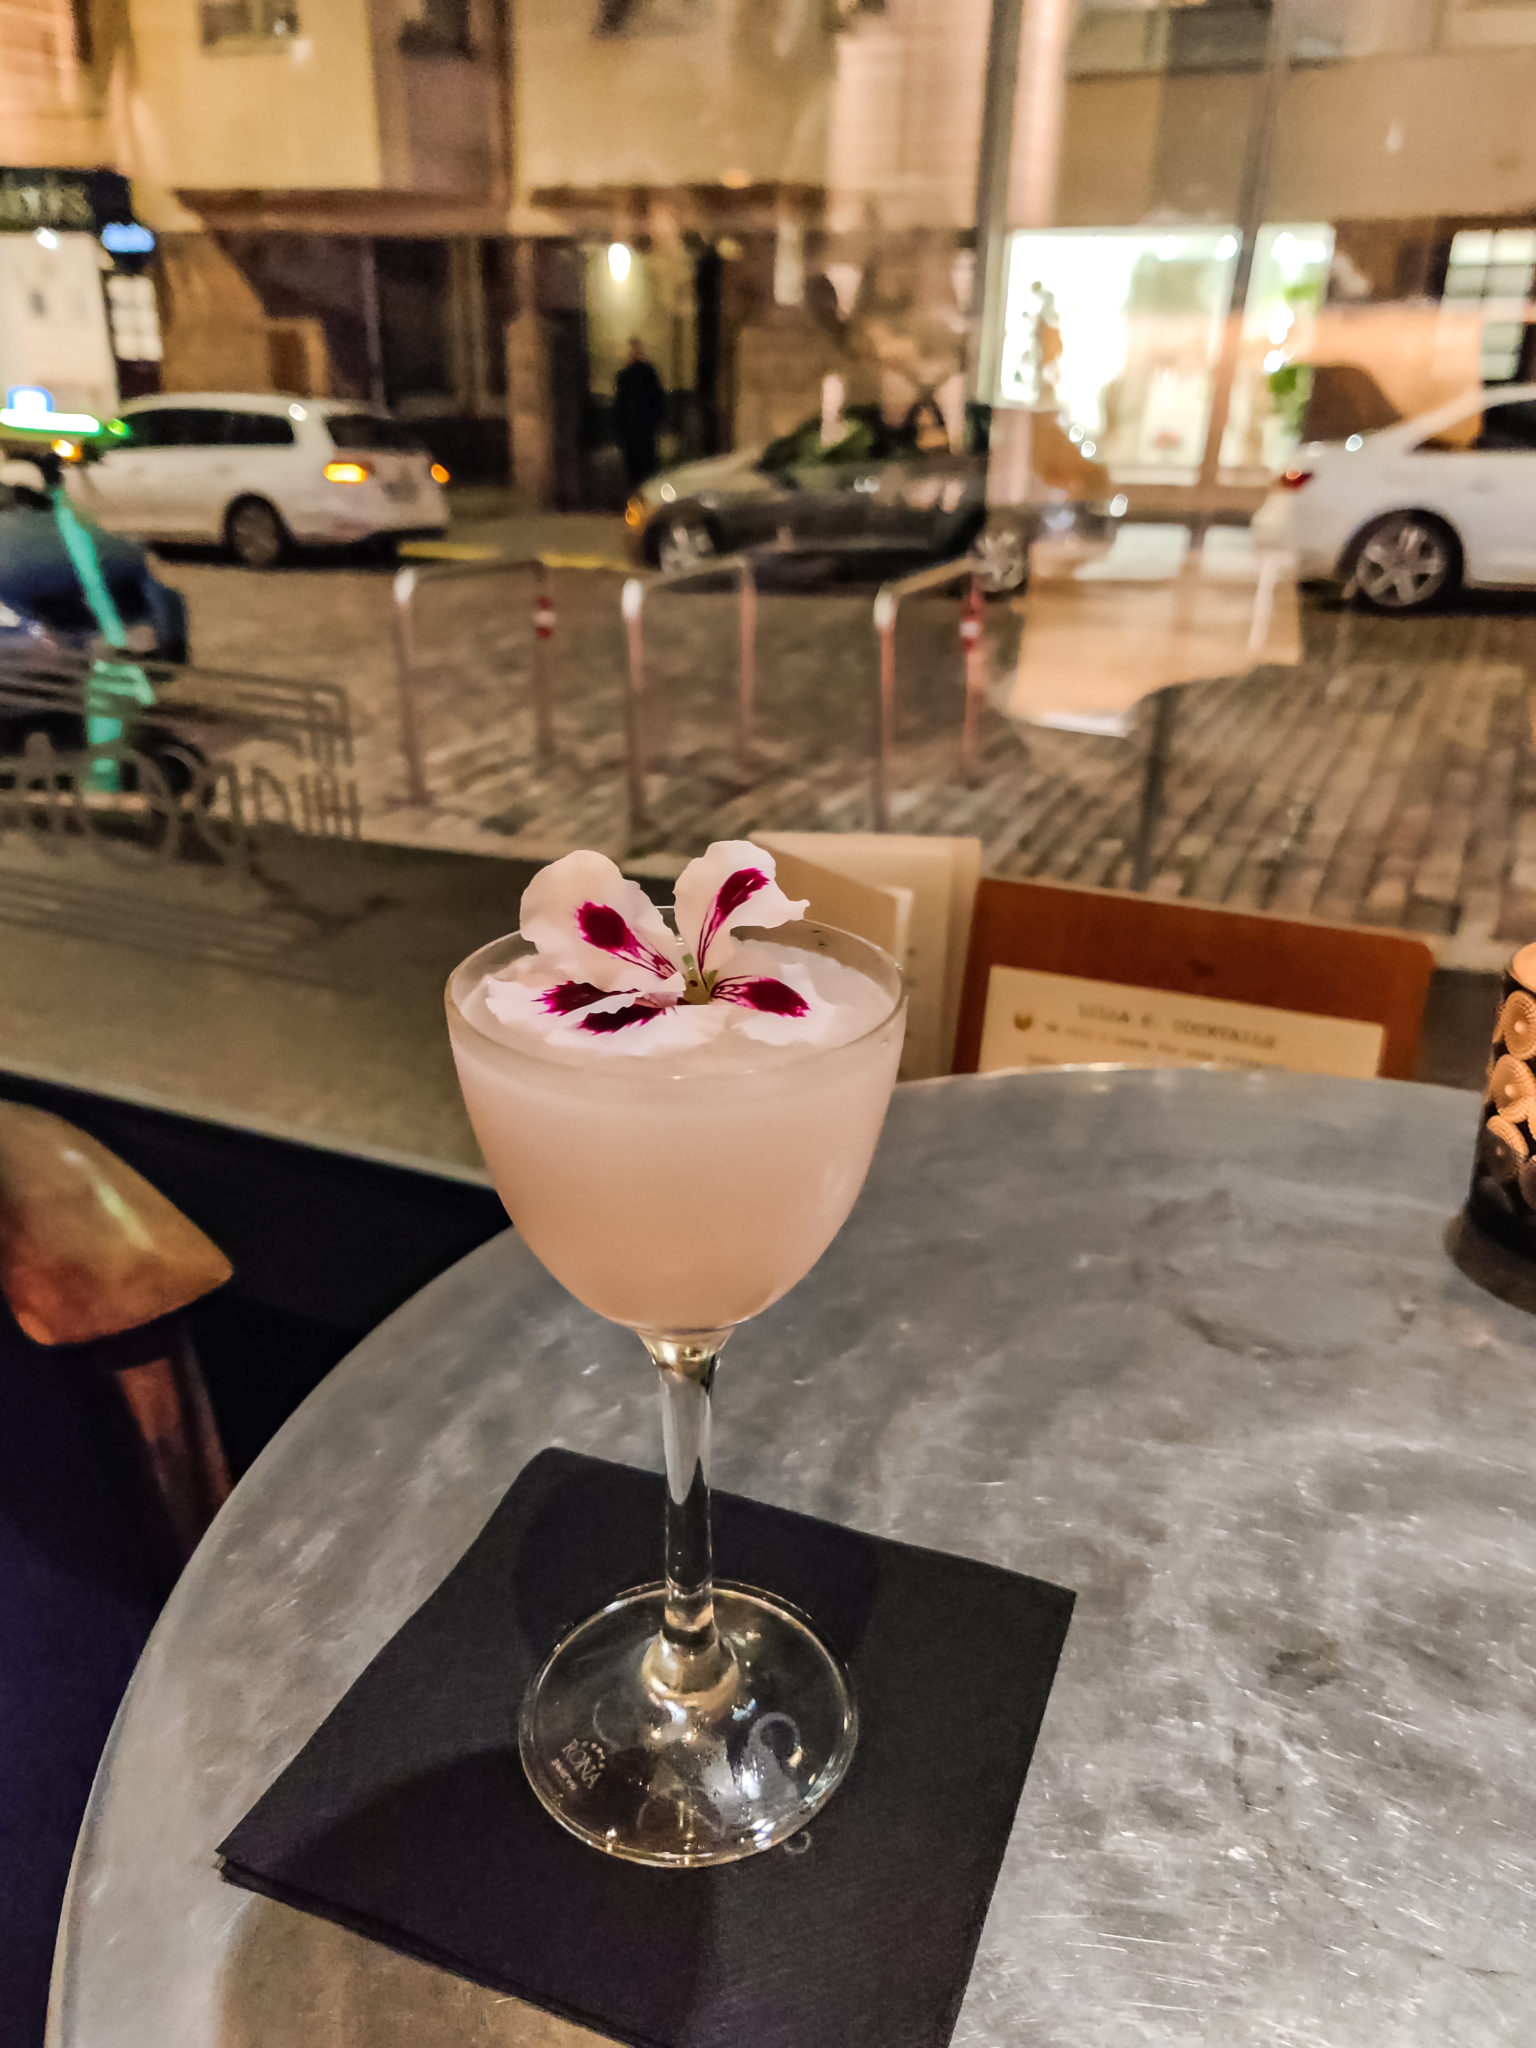 Jalallinen lasi, jossa on hennon vaaleanpunainen juoma ja päällä kukka.